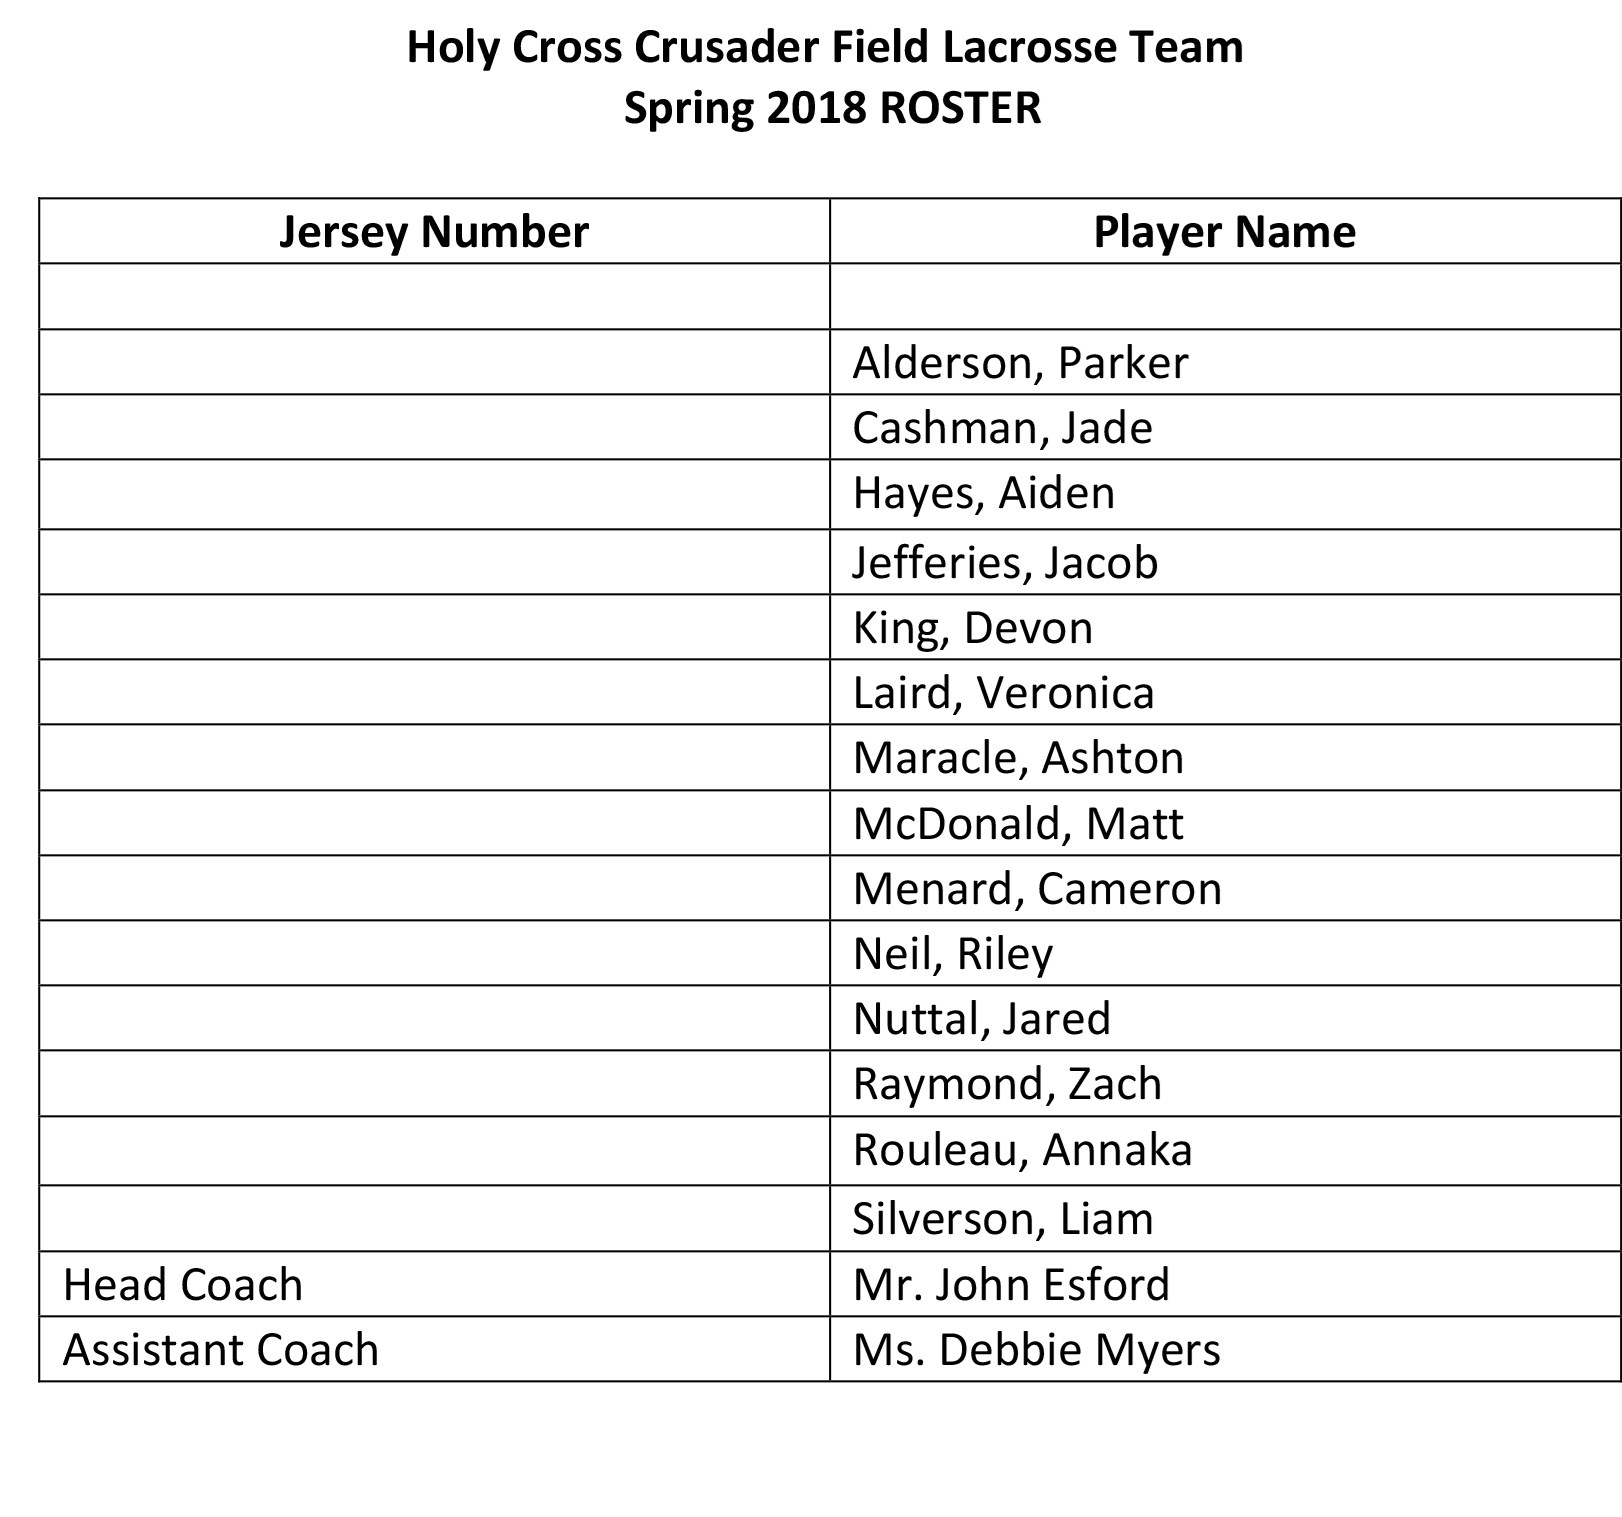 Holy Cross Crusader Field Lacrosse Team 2018 Roster.jpg